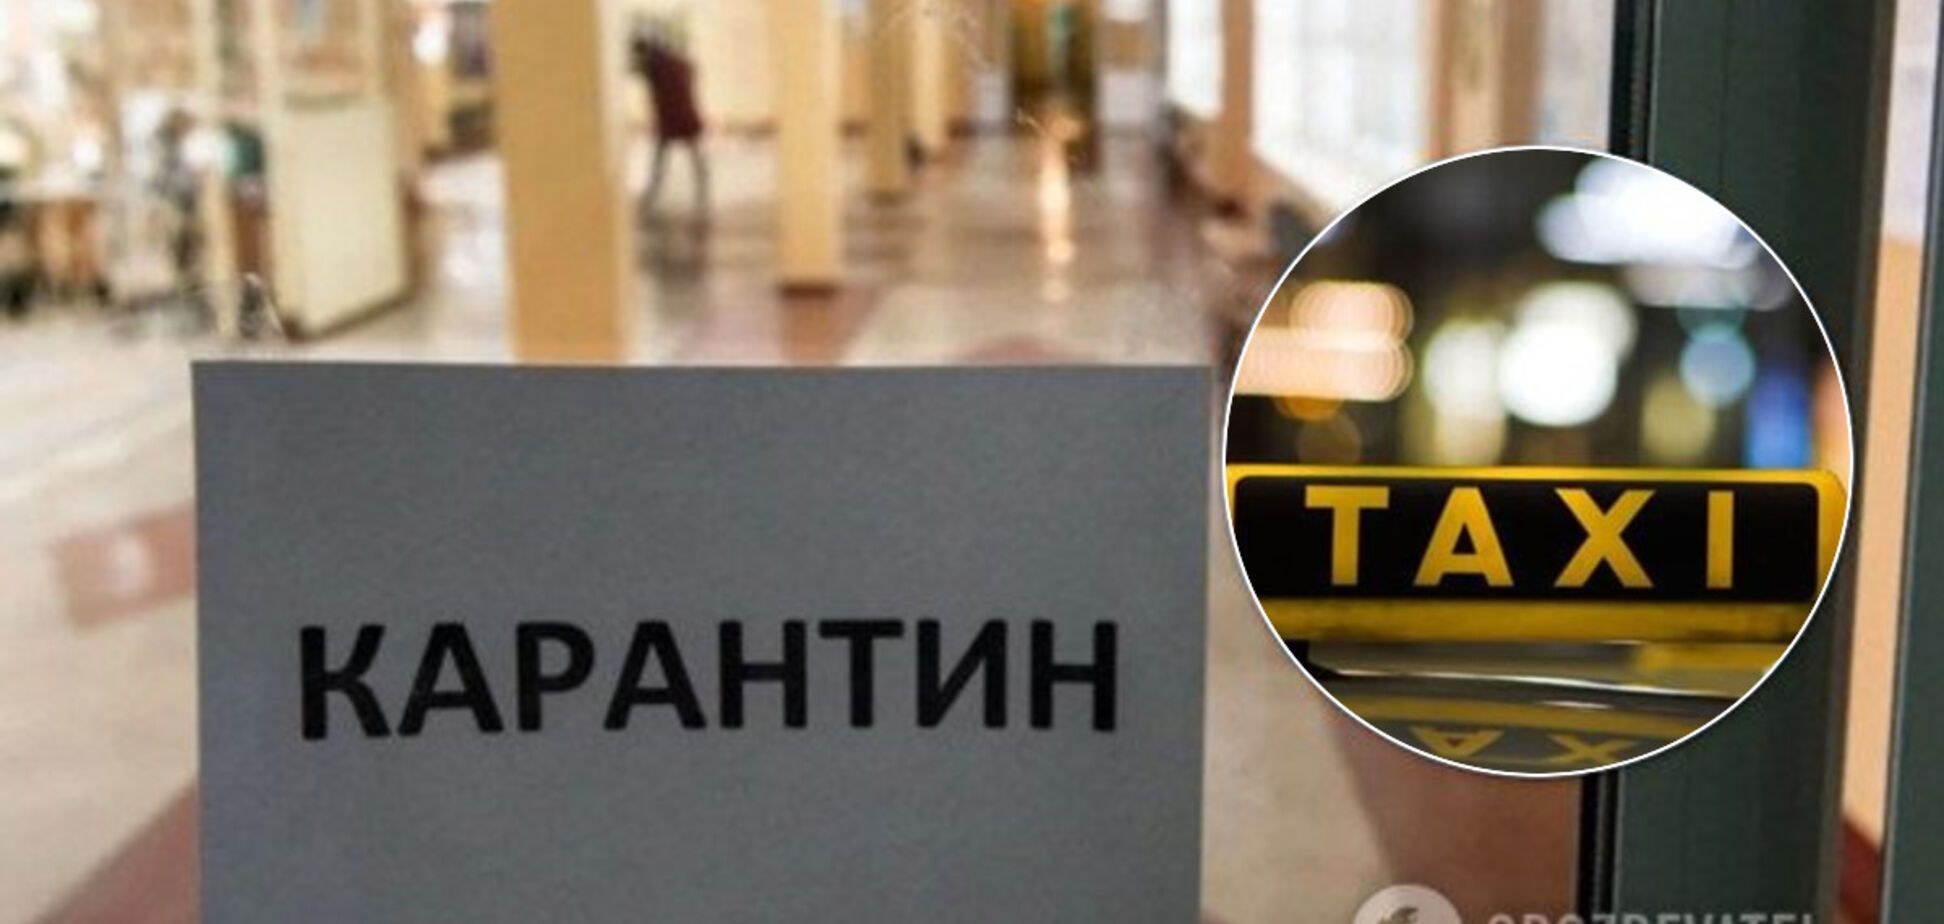 Транспортный коллапс и цены на такси: сколько стоит поездка в Киеве